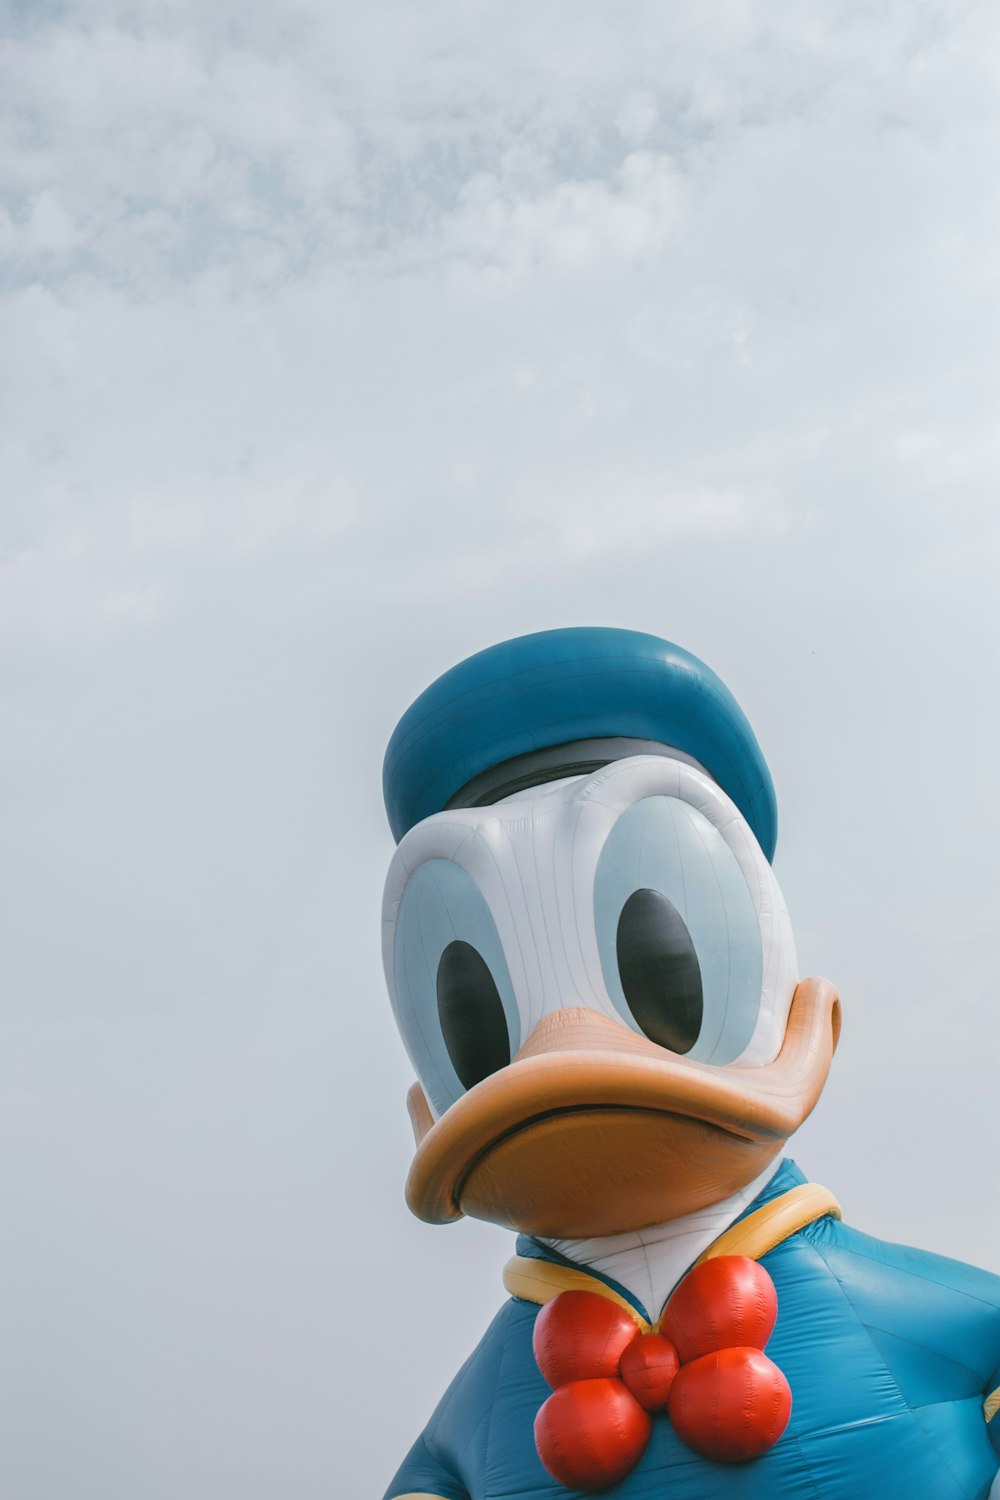 Imágenes de Personajes De Disney | Descarga imágenes gratuitas en Unsplash